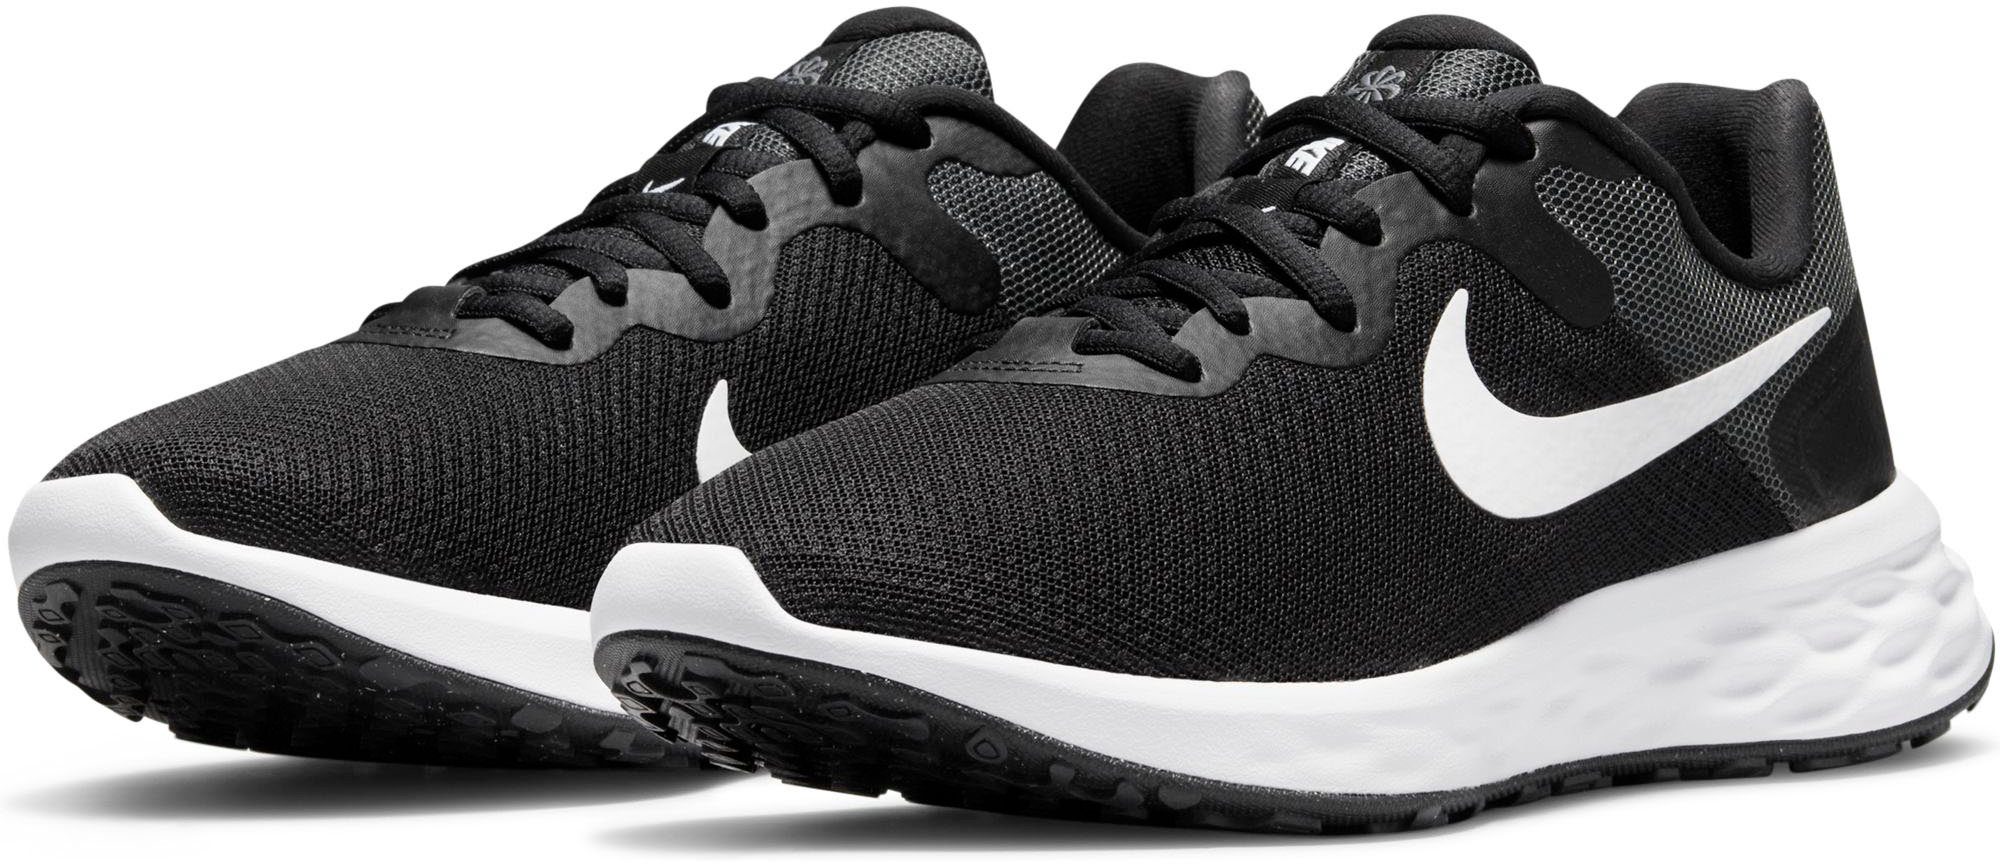 NEXT Nike 6 Laufschuh NATURE schwarz-weiß REVOLUTION